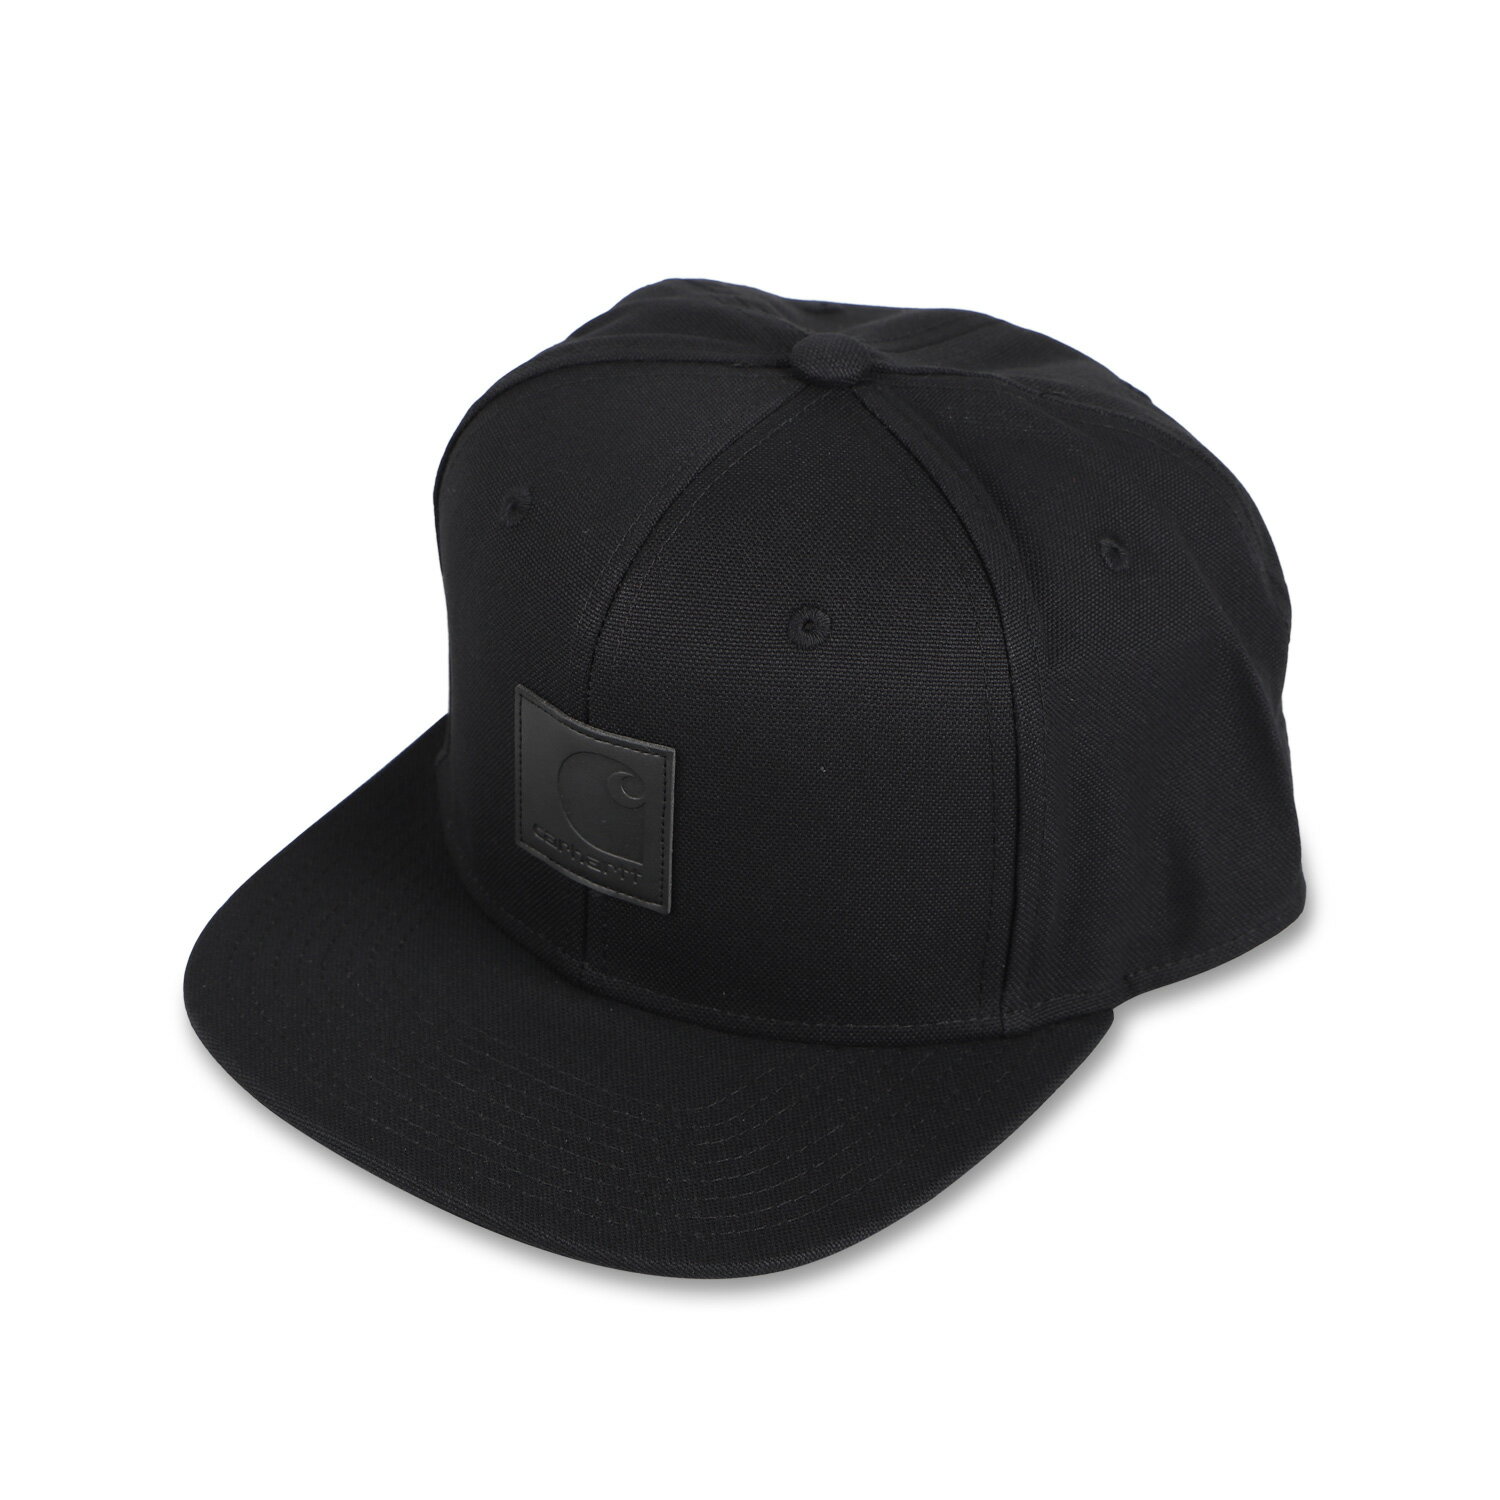 楽天ALLSPORTScarhartt WIP LOGO CAP カーハート キャップ 帽子 スナップバックキャップ メンズ レディース ブラック ダーク ネイビー ブラウン 黒 OCWI0230991